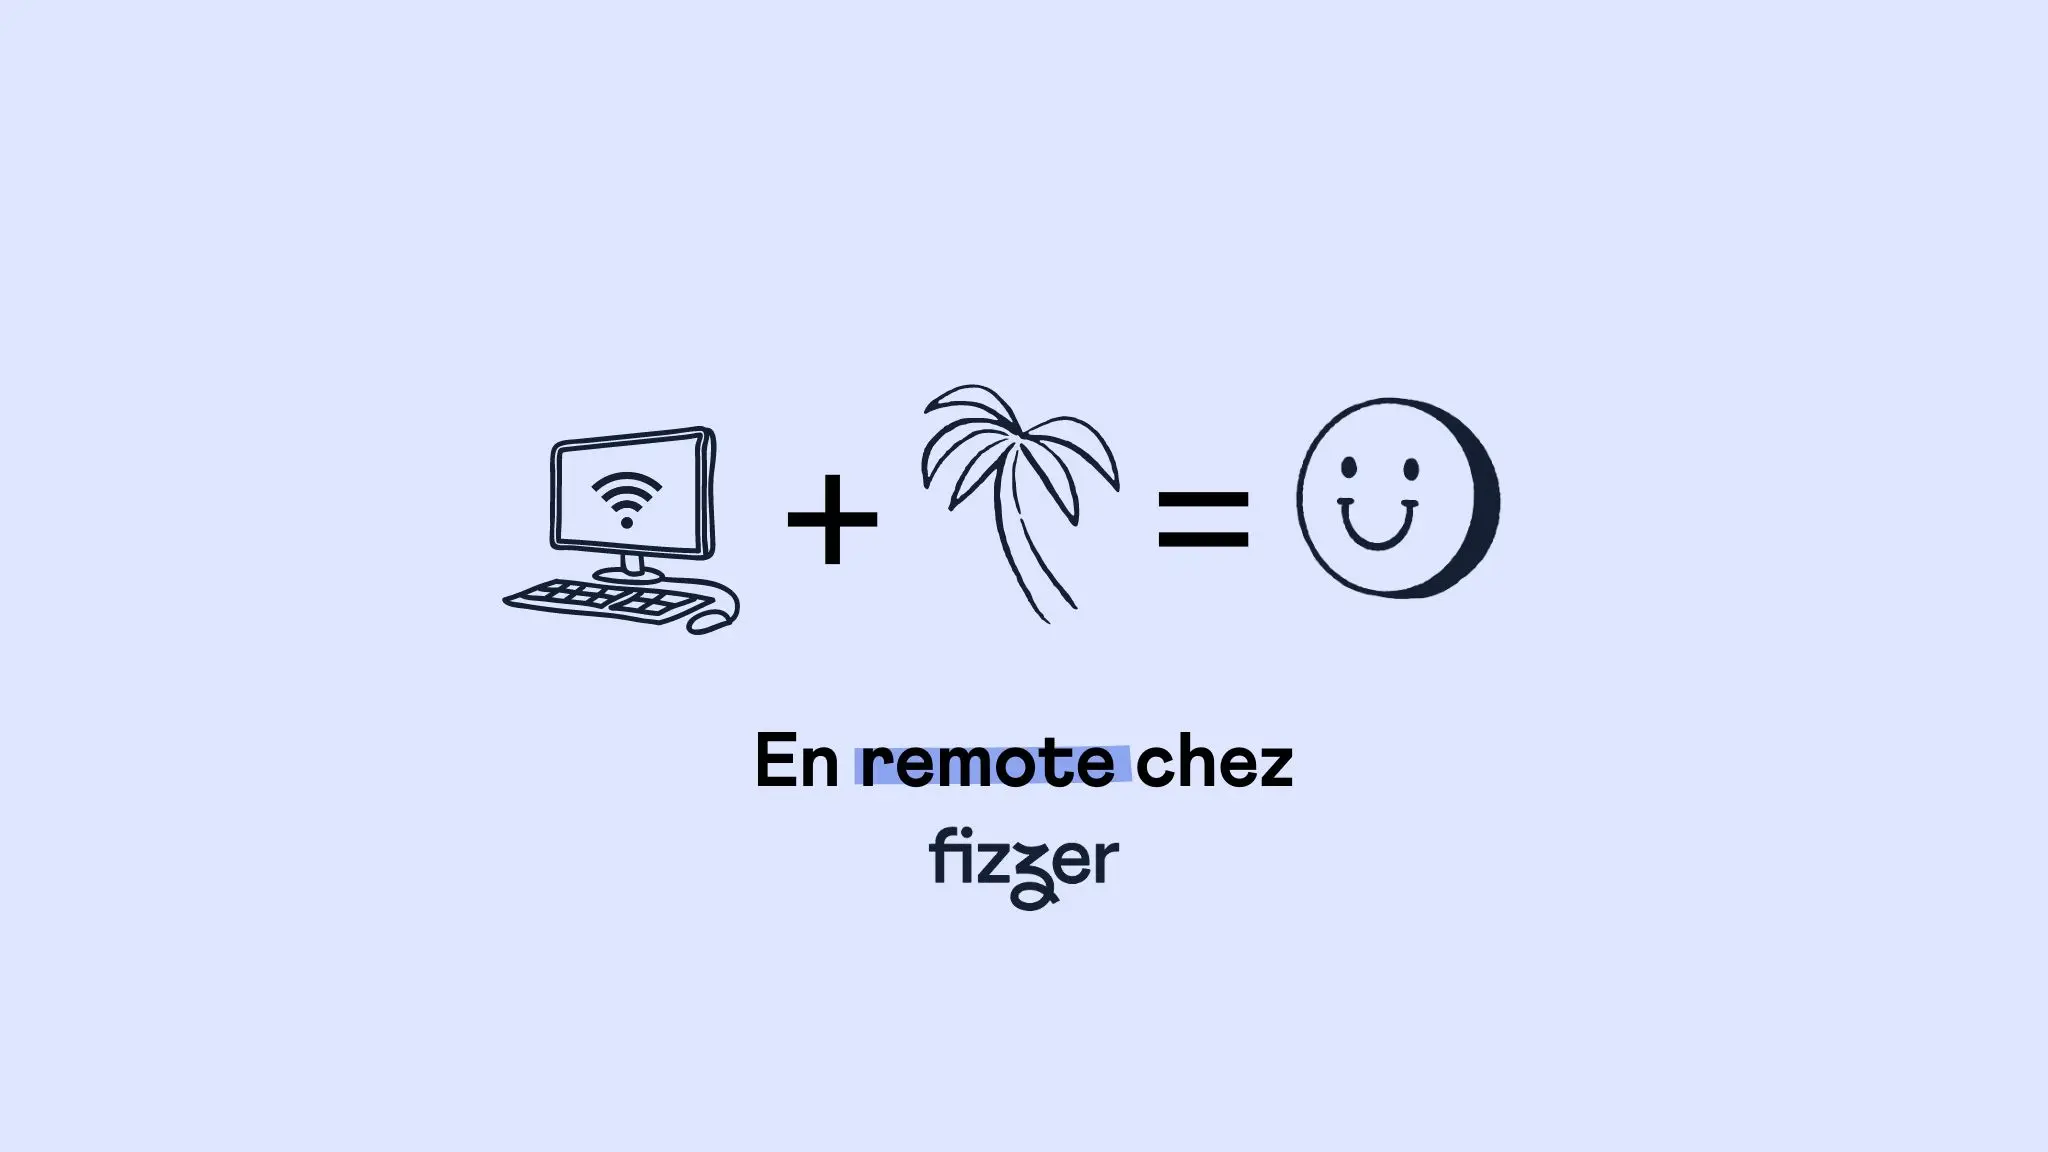 Le Full Remote chez Fizzer : ça marche comment ?